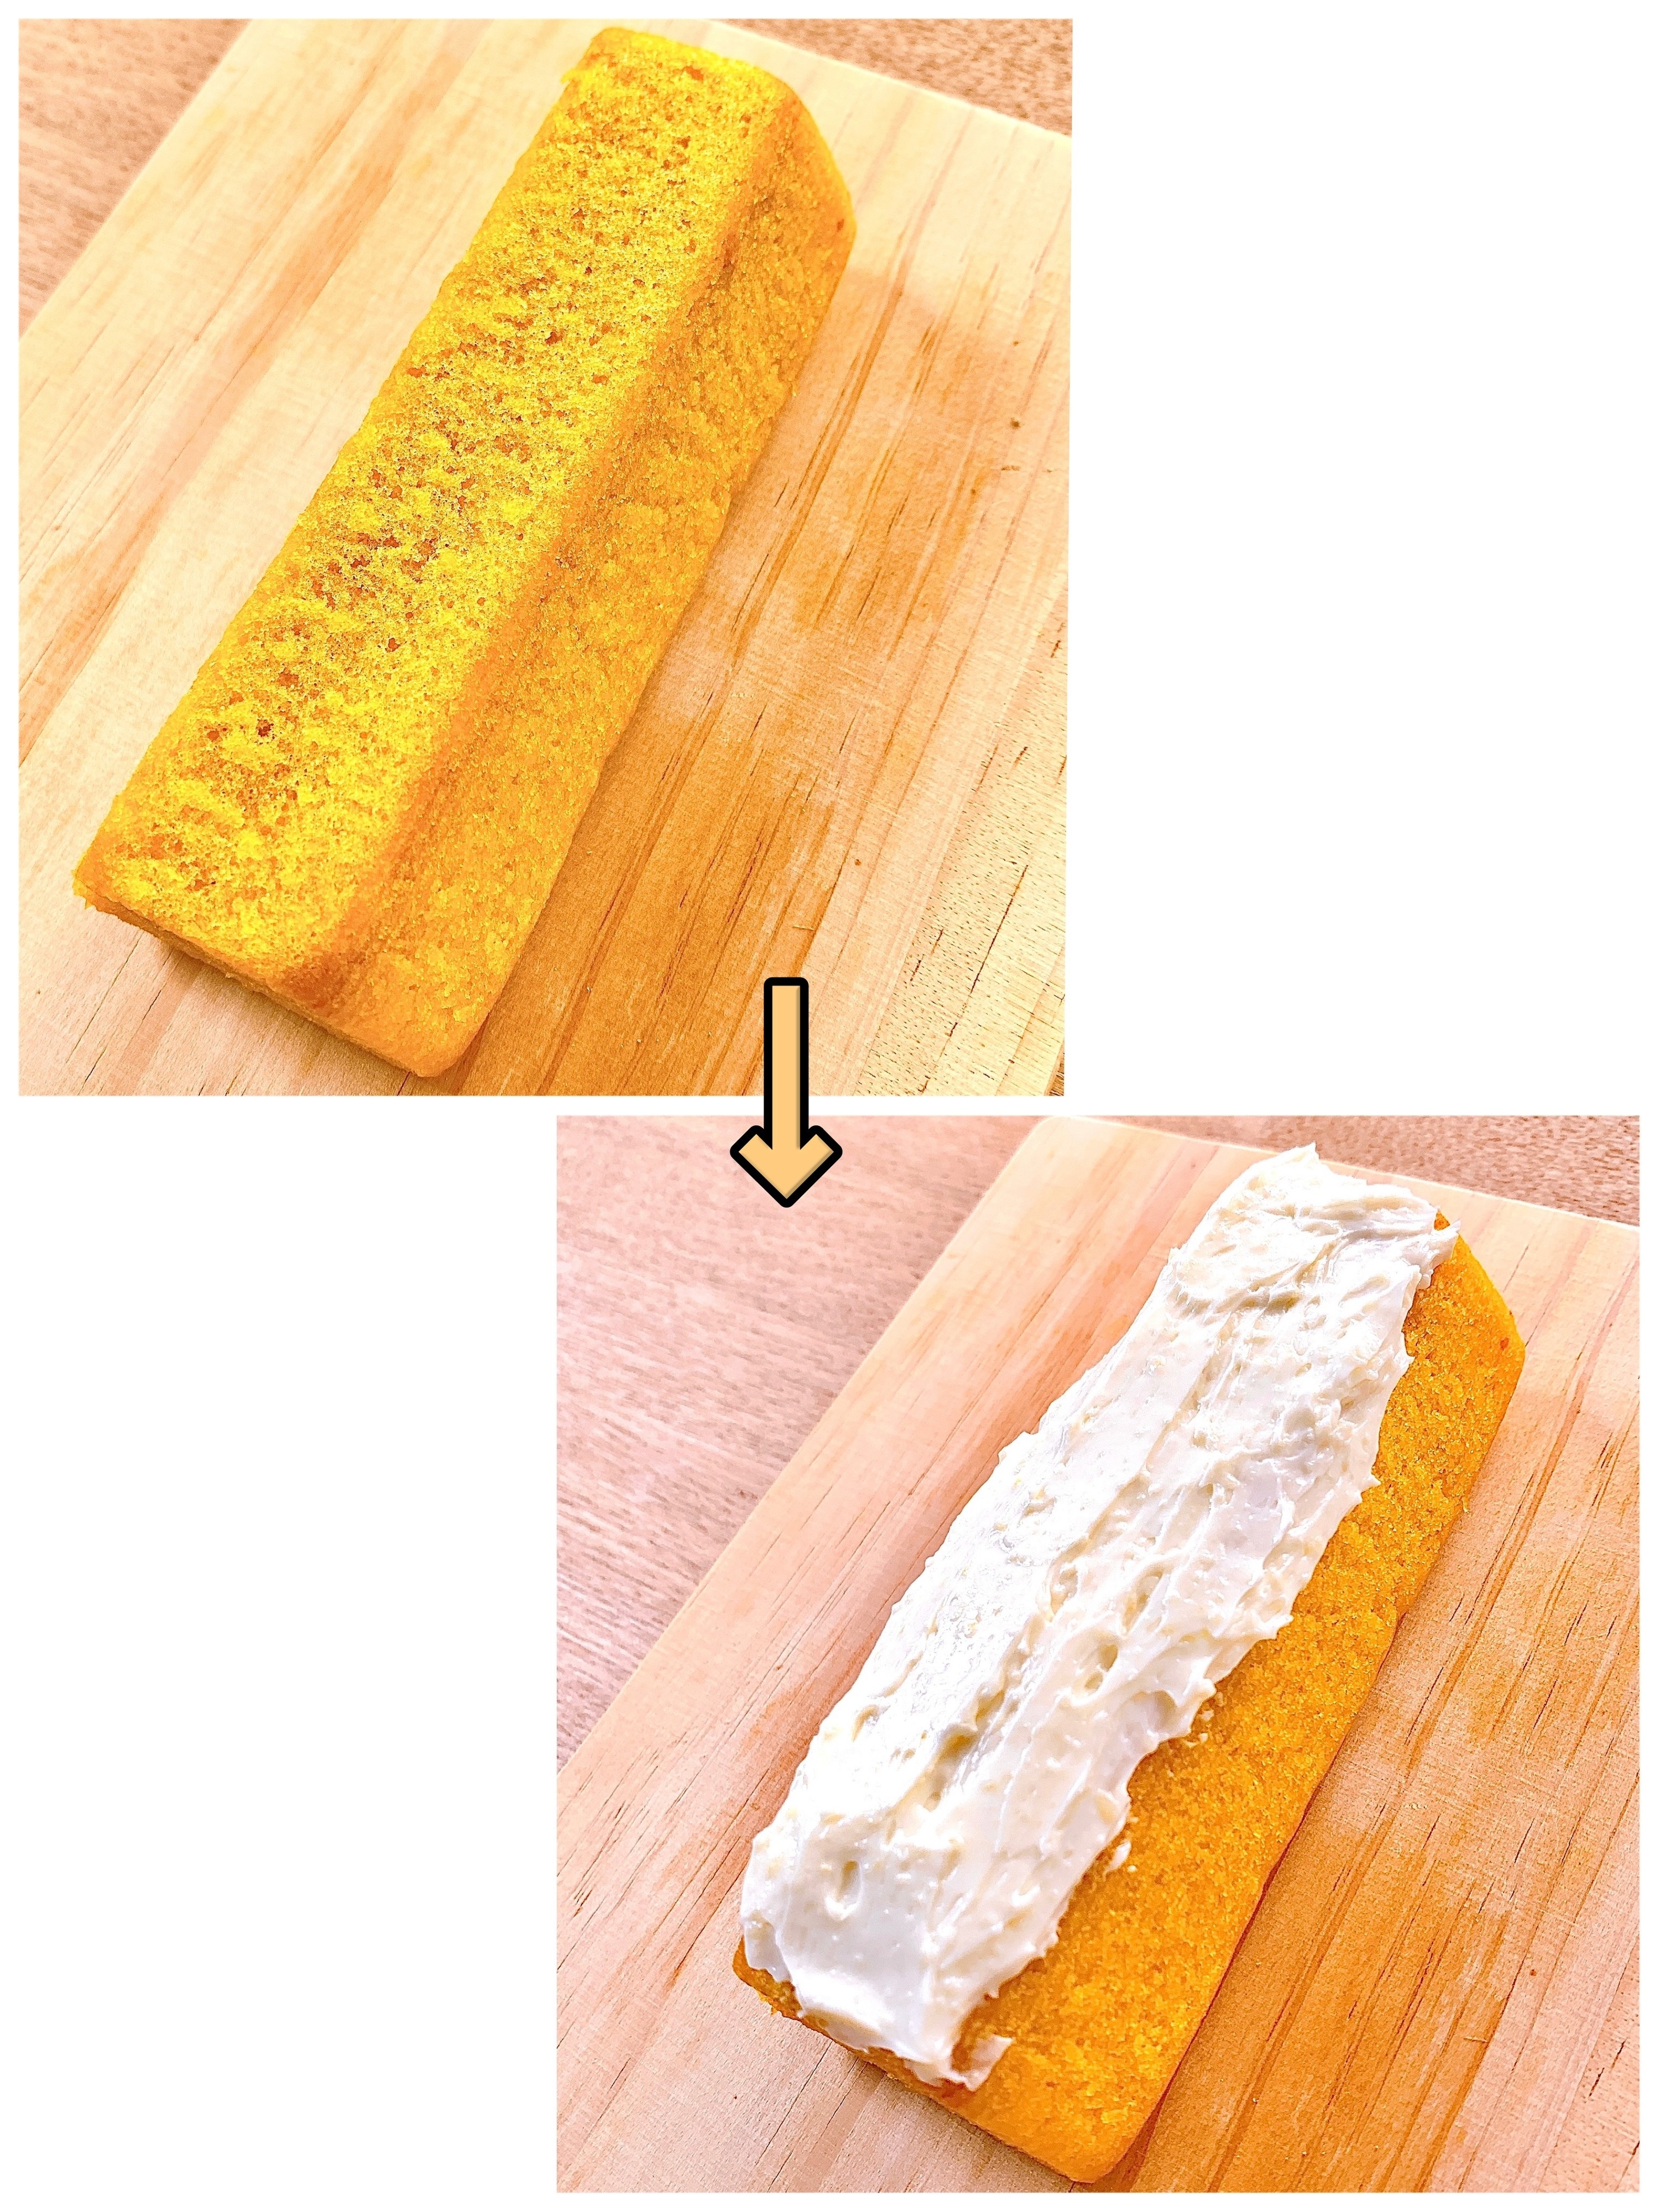 無印良品のオススメのアレンジレシピ「かぼちゃのバウムクリームチーズトースト」